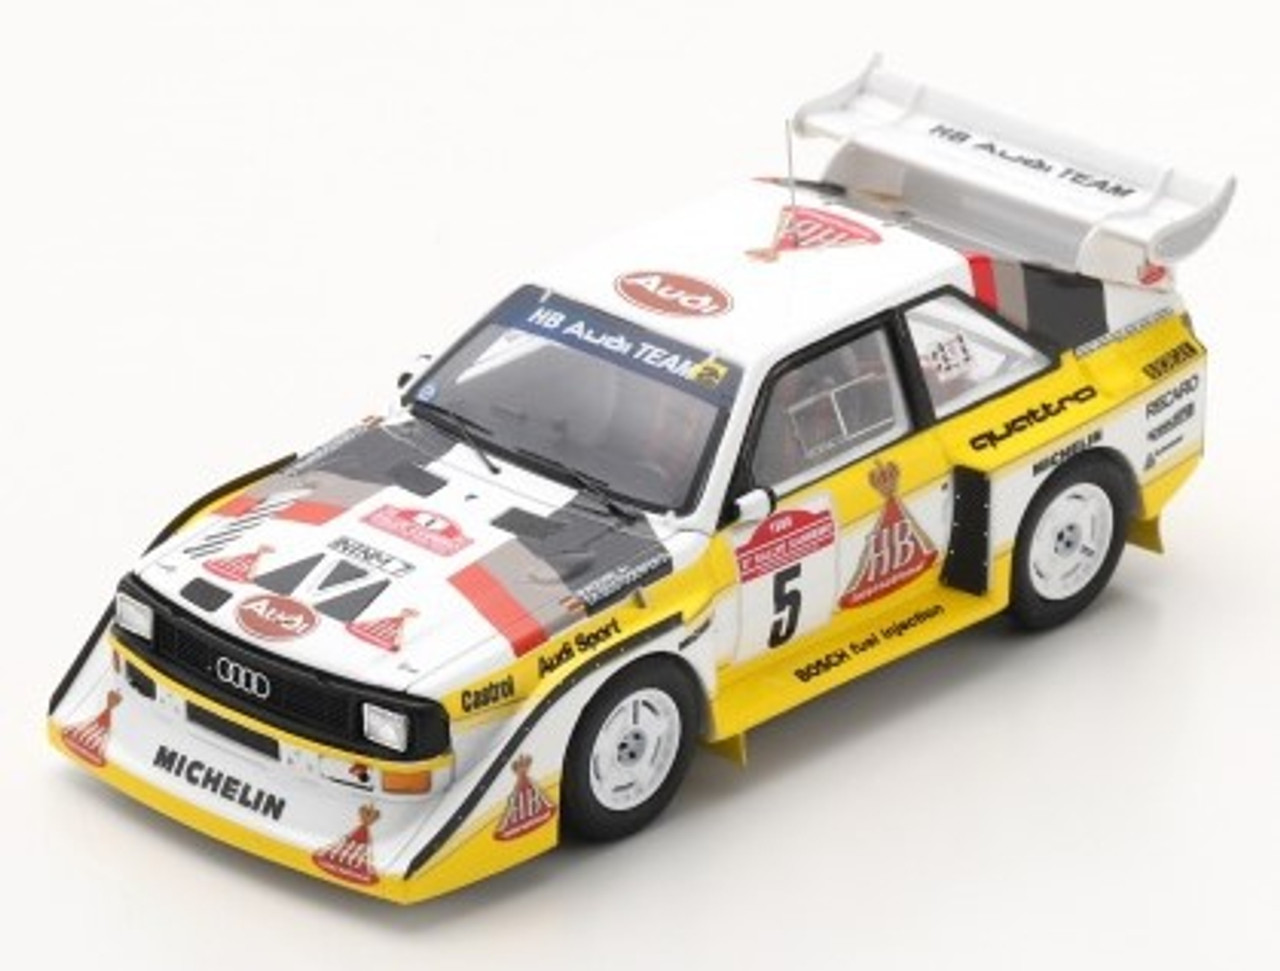 1/43 Audi Sport quattro S1 E2 No.5 Winner Rally Sanremo 1985 Walter Röhrl - Christian Geistdörfer Car Model